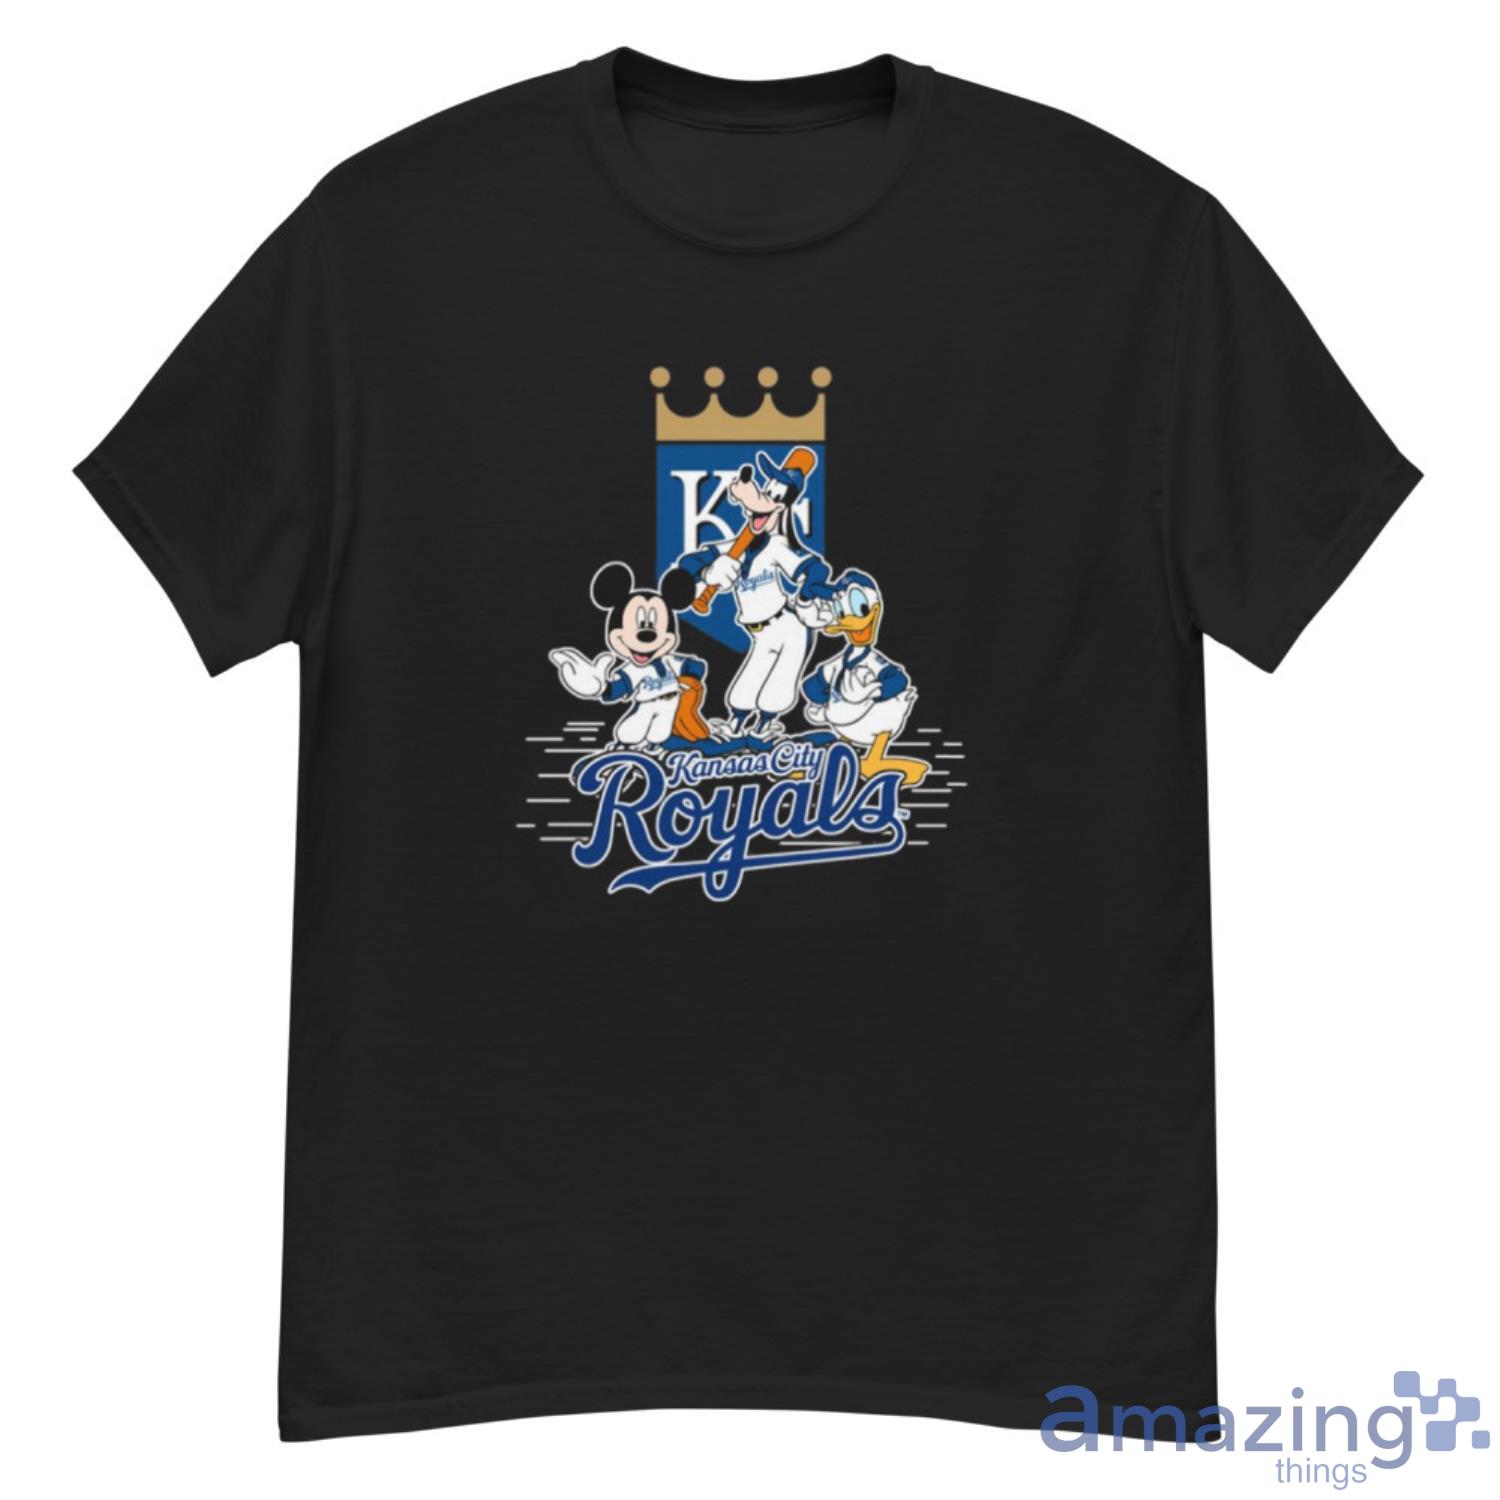 MLB Team Apparel Youth Kansas City Royals Royal Home Run T-Shirt